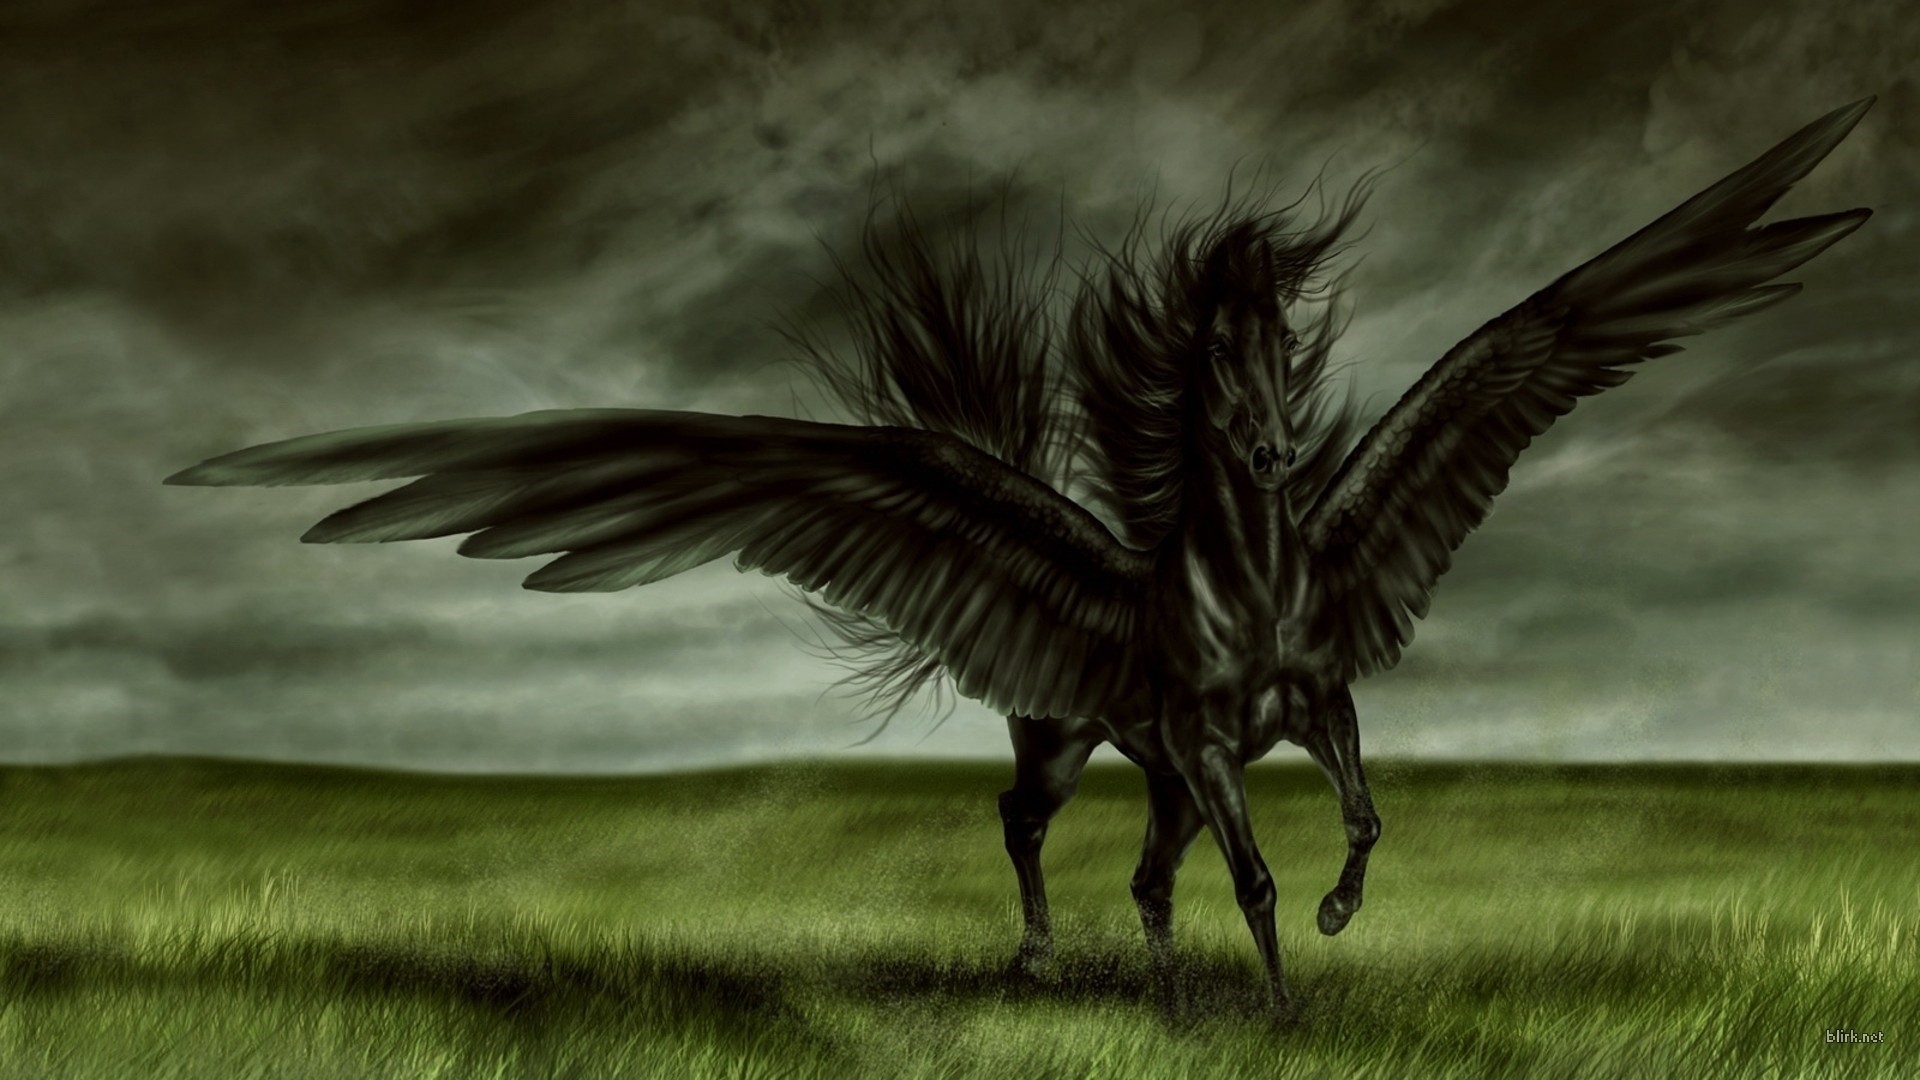 General 1920x1080 fantasy art wings Pegasus creature artwork digital art watermarked